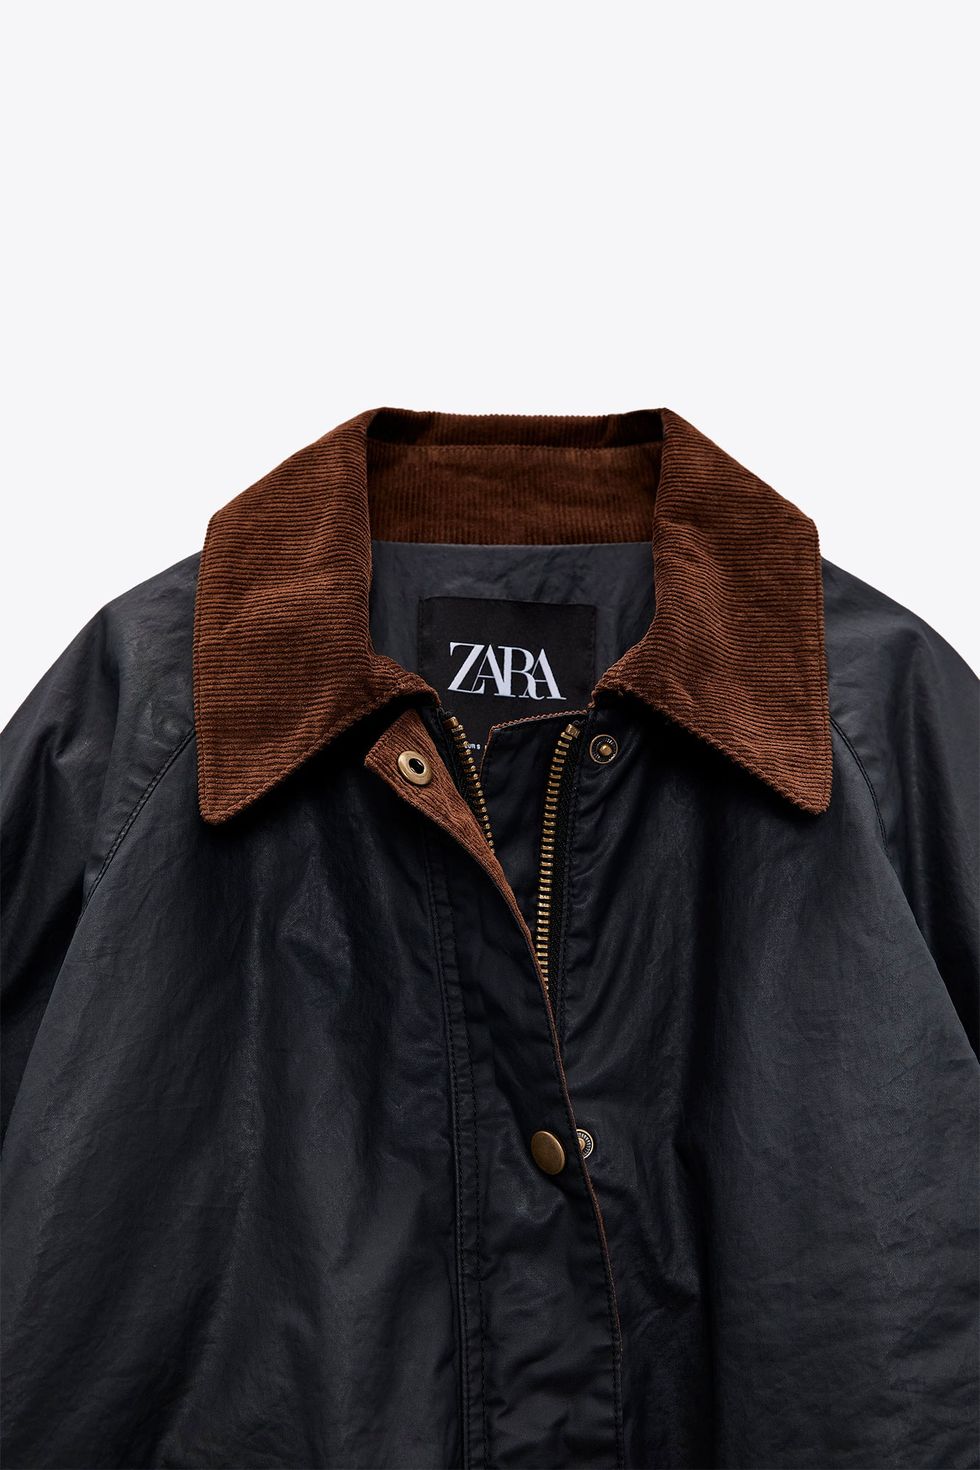 Zara lanza un abrigo encerado que es la alternativa perfecta al clásico  Barbour